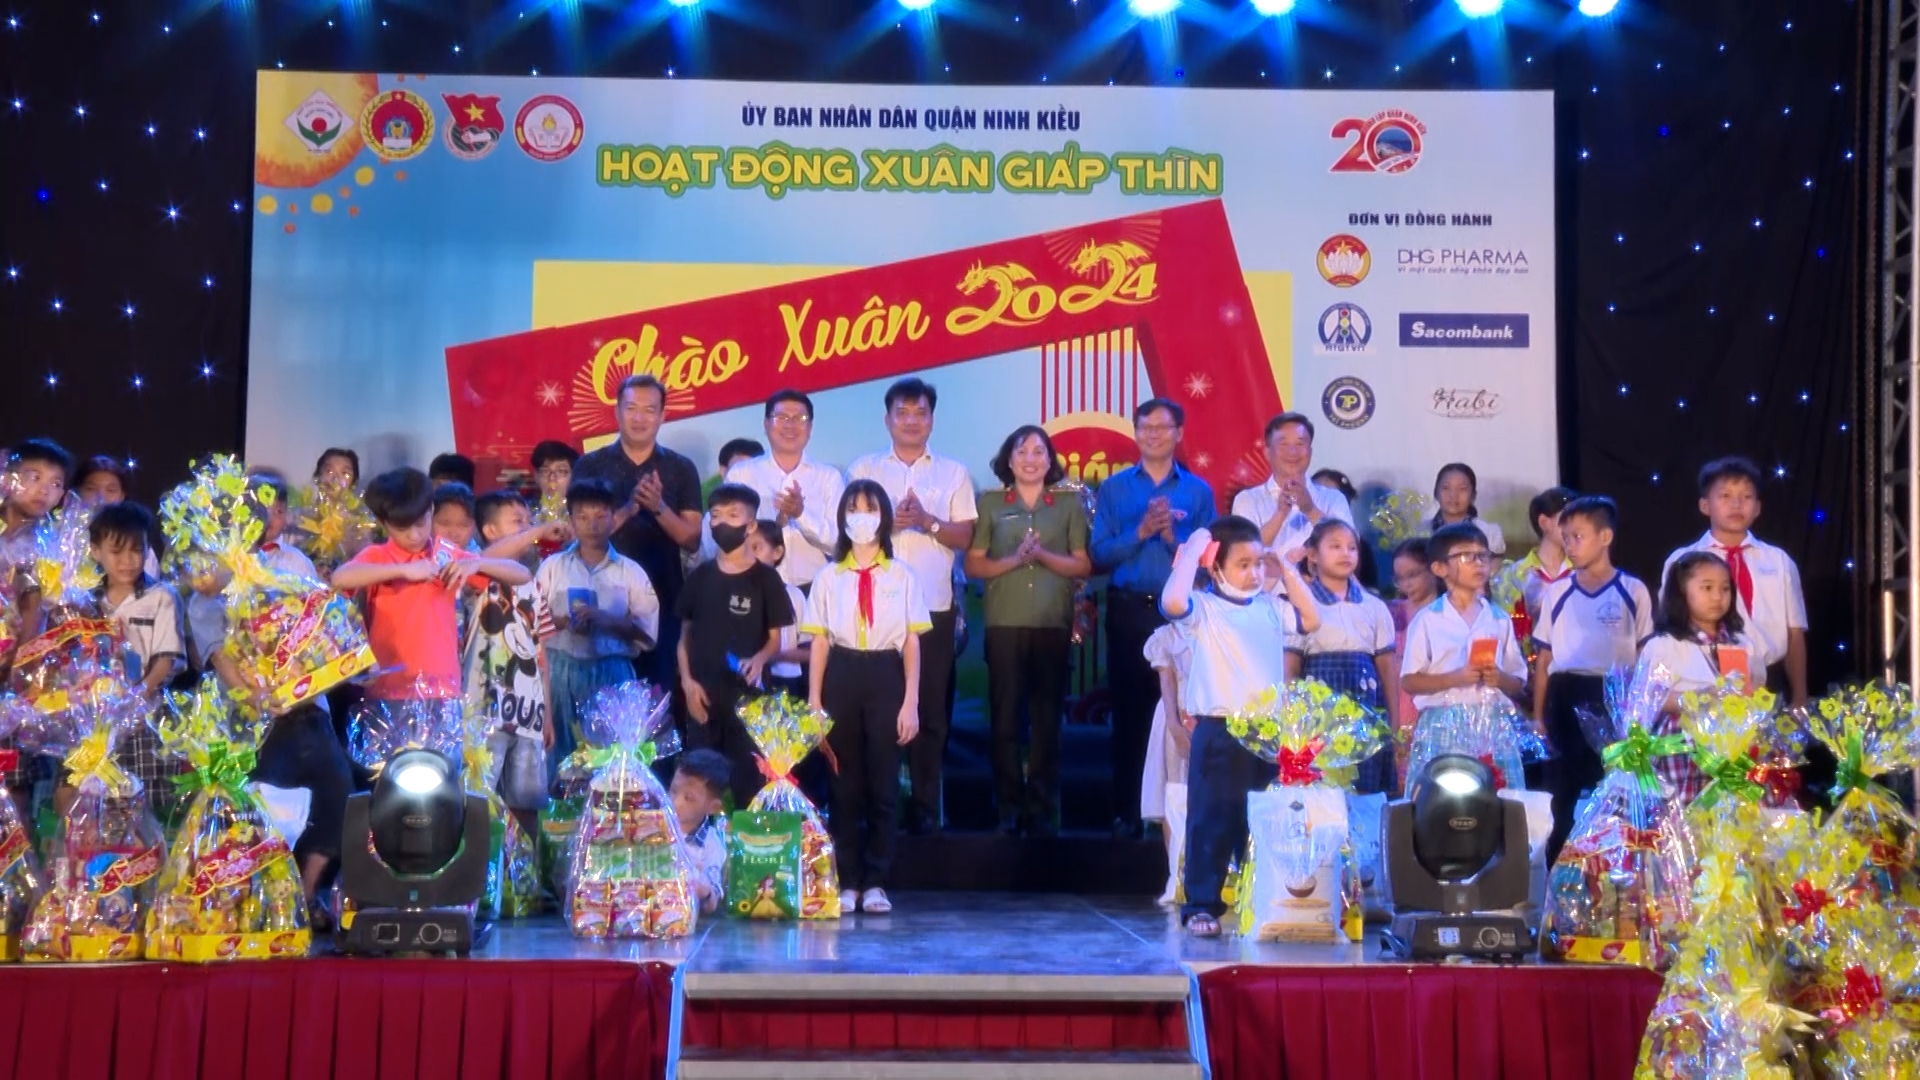 Đại diện lãnh đạo quận Ninh Kiều và các nhà tài trợ trao quà cho thiếu nhi có hoàn cảnh khó khăn tại đêm văn nghệ